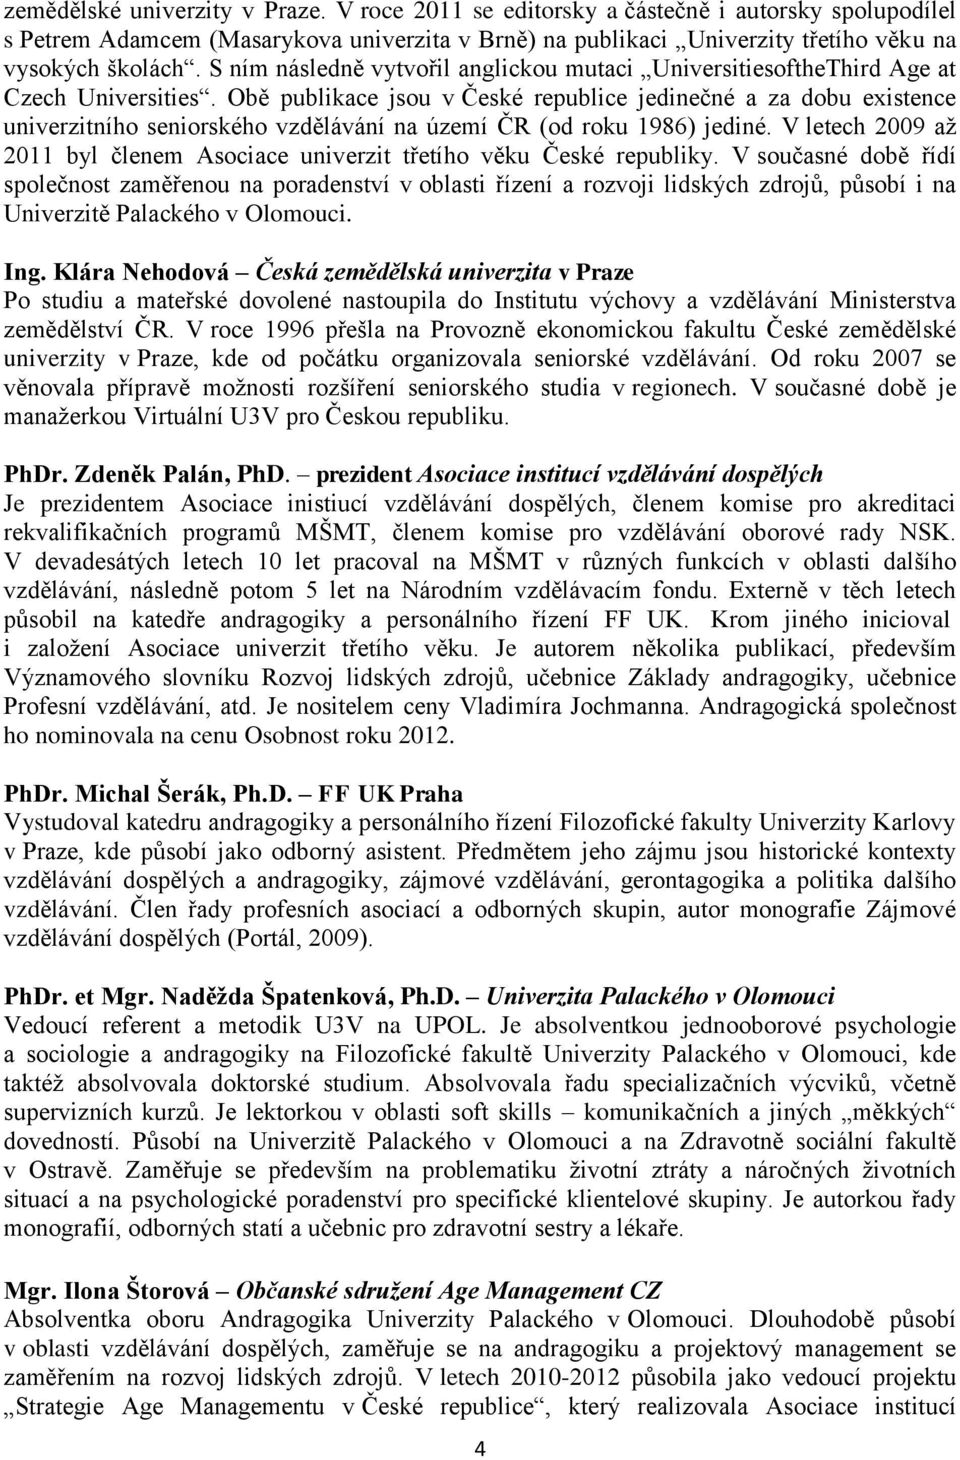 Obě publikace jsou v České republice jedinečné a za dobu existence univerzitního seniorského vzdělávání na území ČR (od roku 1986) jediné.